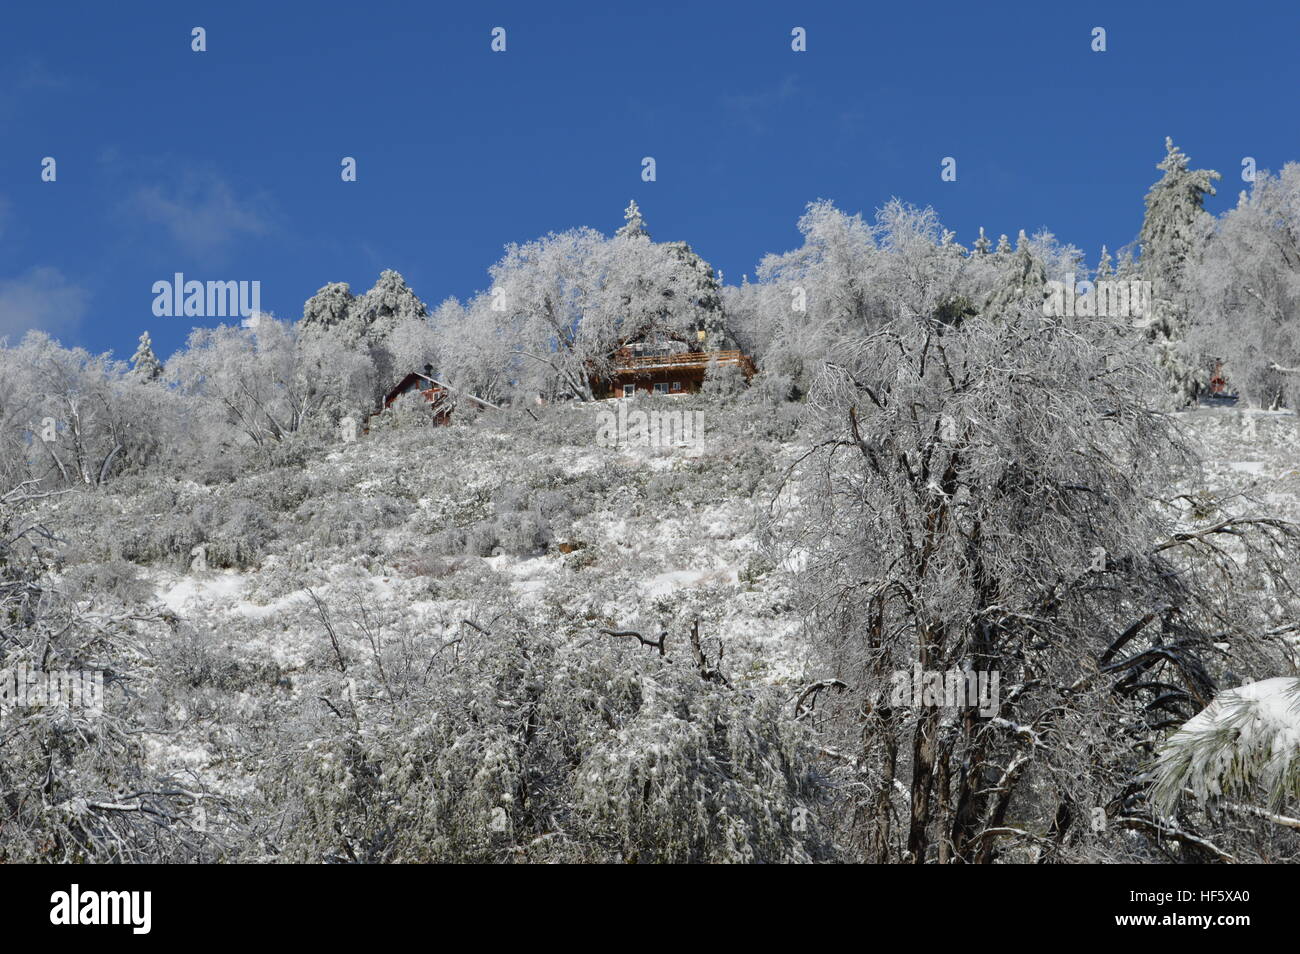 House on Snowy Mountain Stock Photo